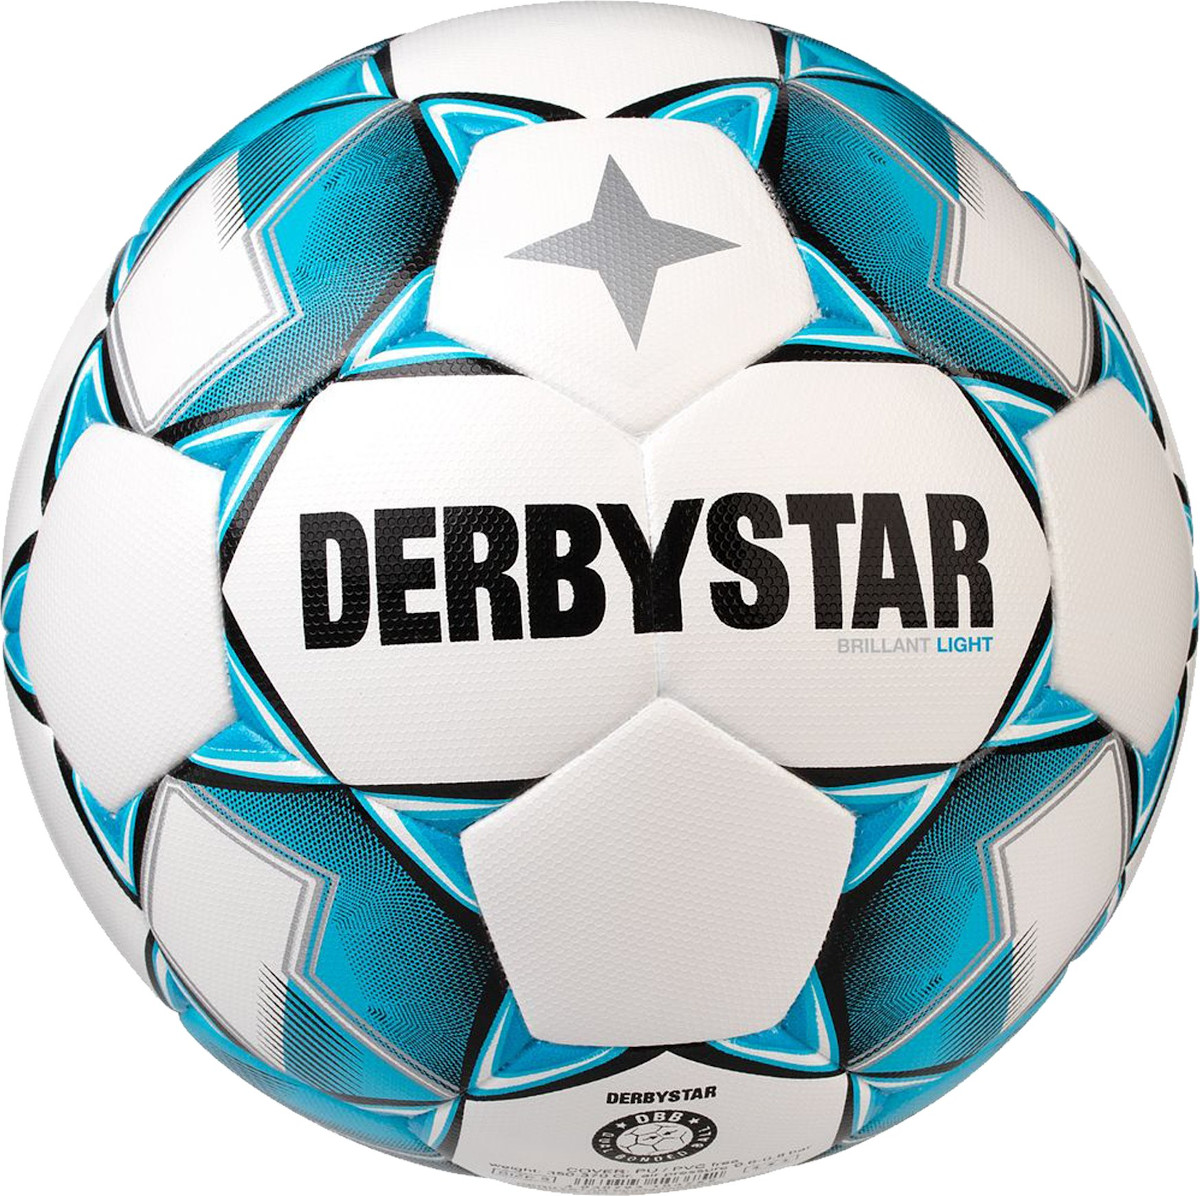 Minge Derbystar Brilliant Light DB v20 350g training ball